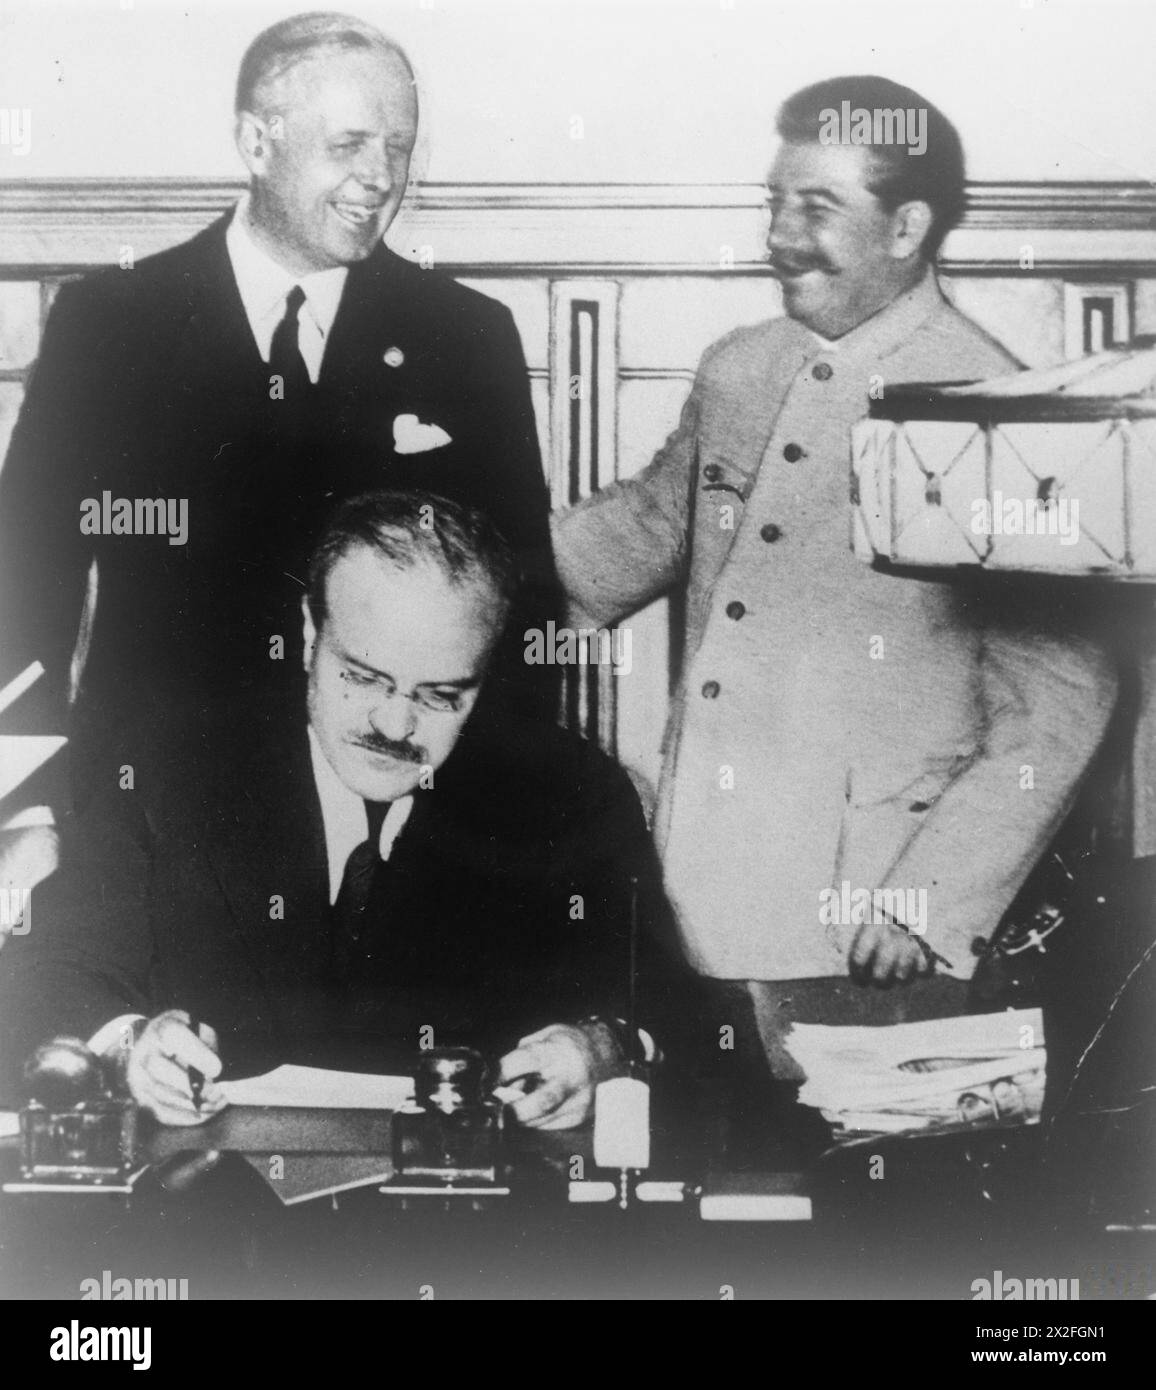 LA COOPERAZIONE NAZISTA-SOVIETICA, 1939-1941 - Joachim von Ribbentrop, ministro degli Esteri tedesco, che condivide uno scherzo con Stalin mentre Vyacheslav Molotov, ministro degli Esteri sovietico, firma il trattato di amicizia, cooperazione e demarcazione, la continuazione del patto Ribbentrop-Molotov, il patto di demarcazione dell'Europa, 28 settembre 1939 Stalin, Joseph, Molotov, Vyacheslav Mikhailovich, Ribbentrop, Joachim von Foto Stock